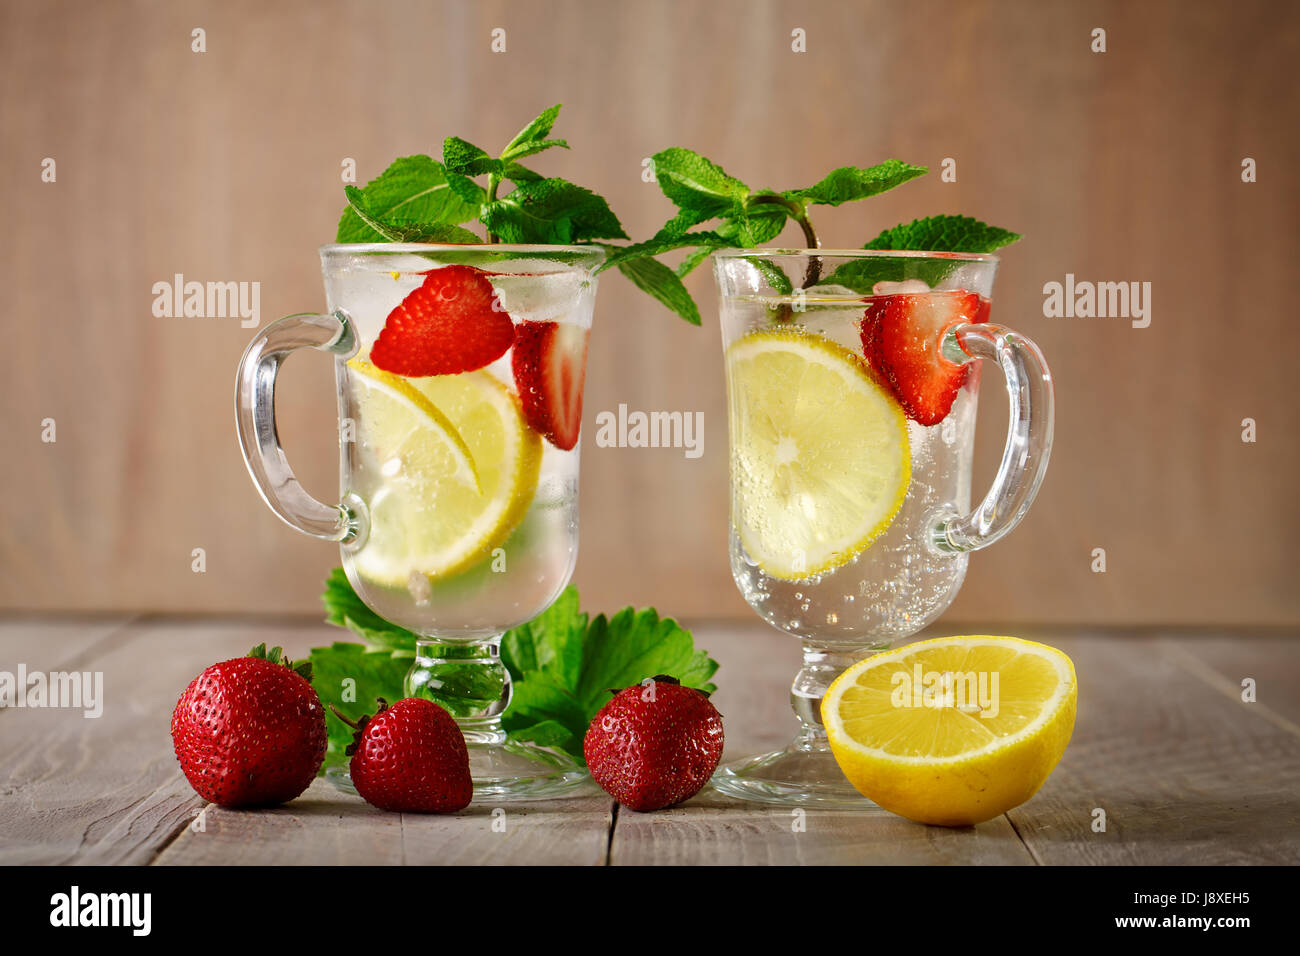 Verano fresco saludable bebida con limón y fresas con hielo. Foto de stock